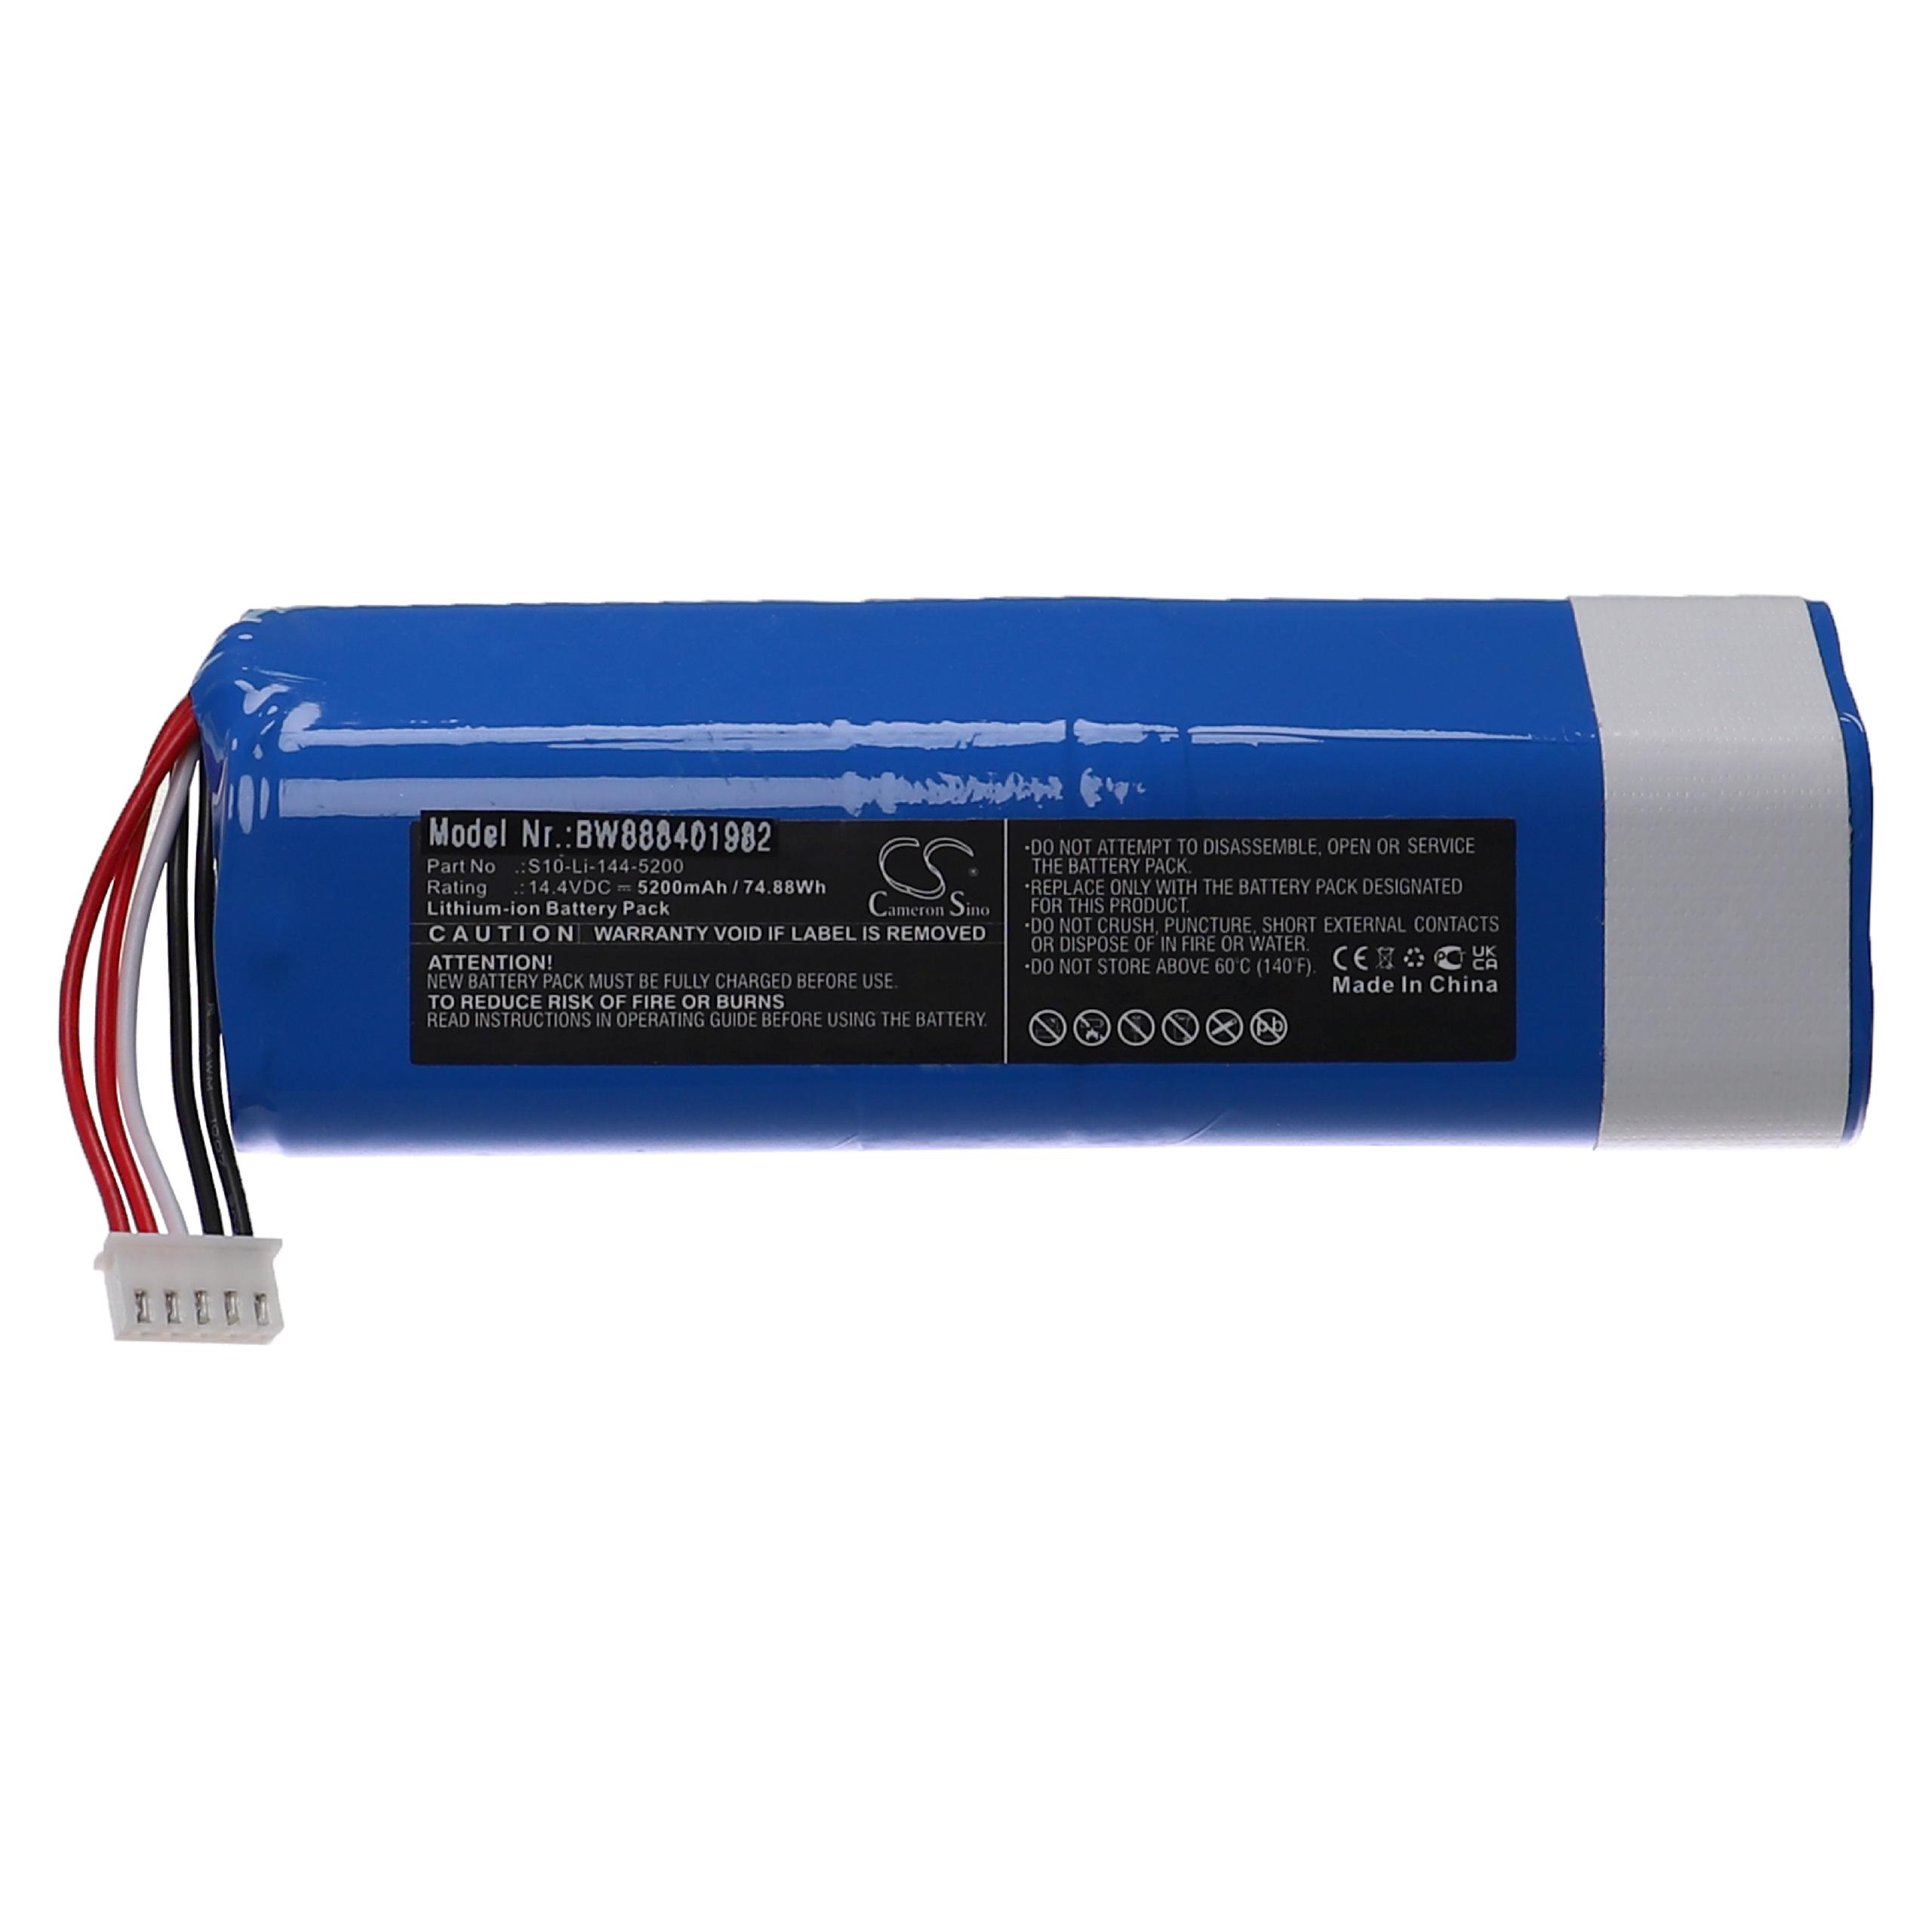 Batterie remplace Ecovacs 201-1913-4200, 201-1913-4201 pour robot aspirateur - 5200mAh 14,4V Li-ion, bleu